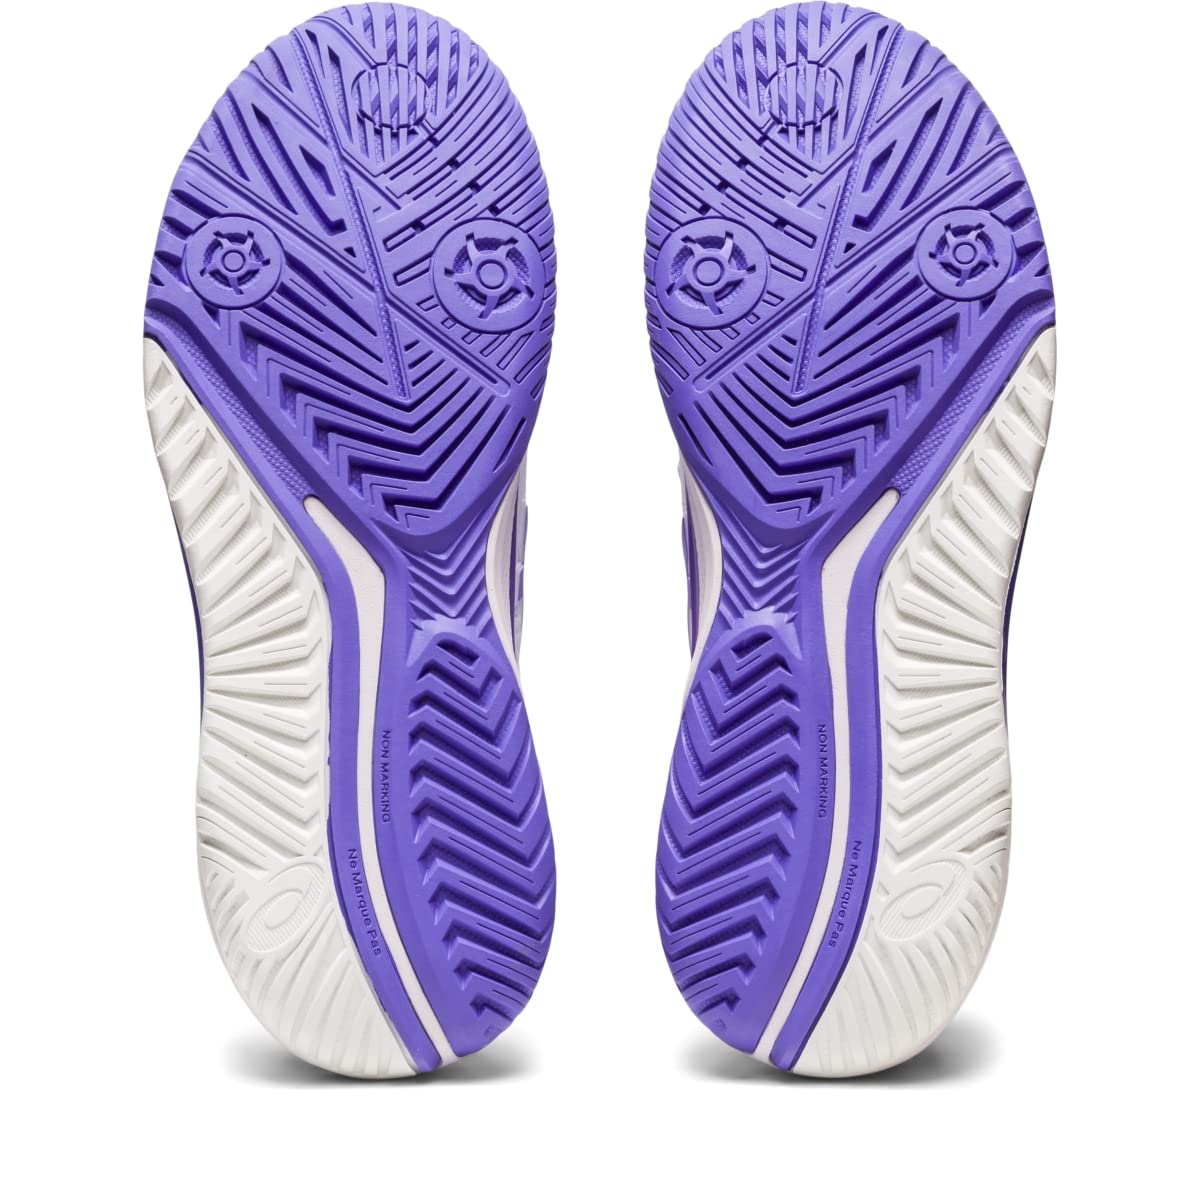 ASICS Women's Gel-Resolution 9 Tennis Shoes